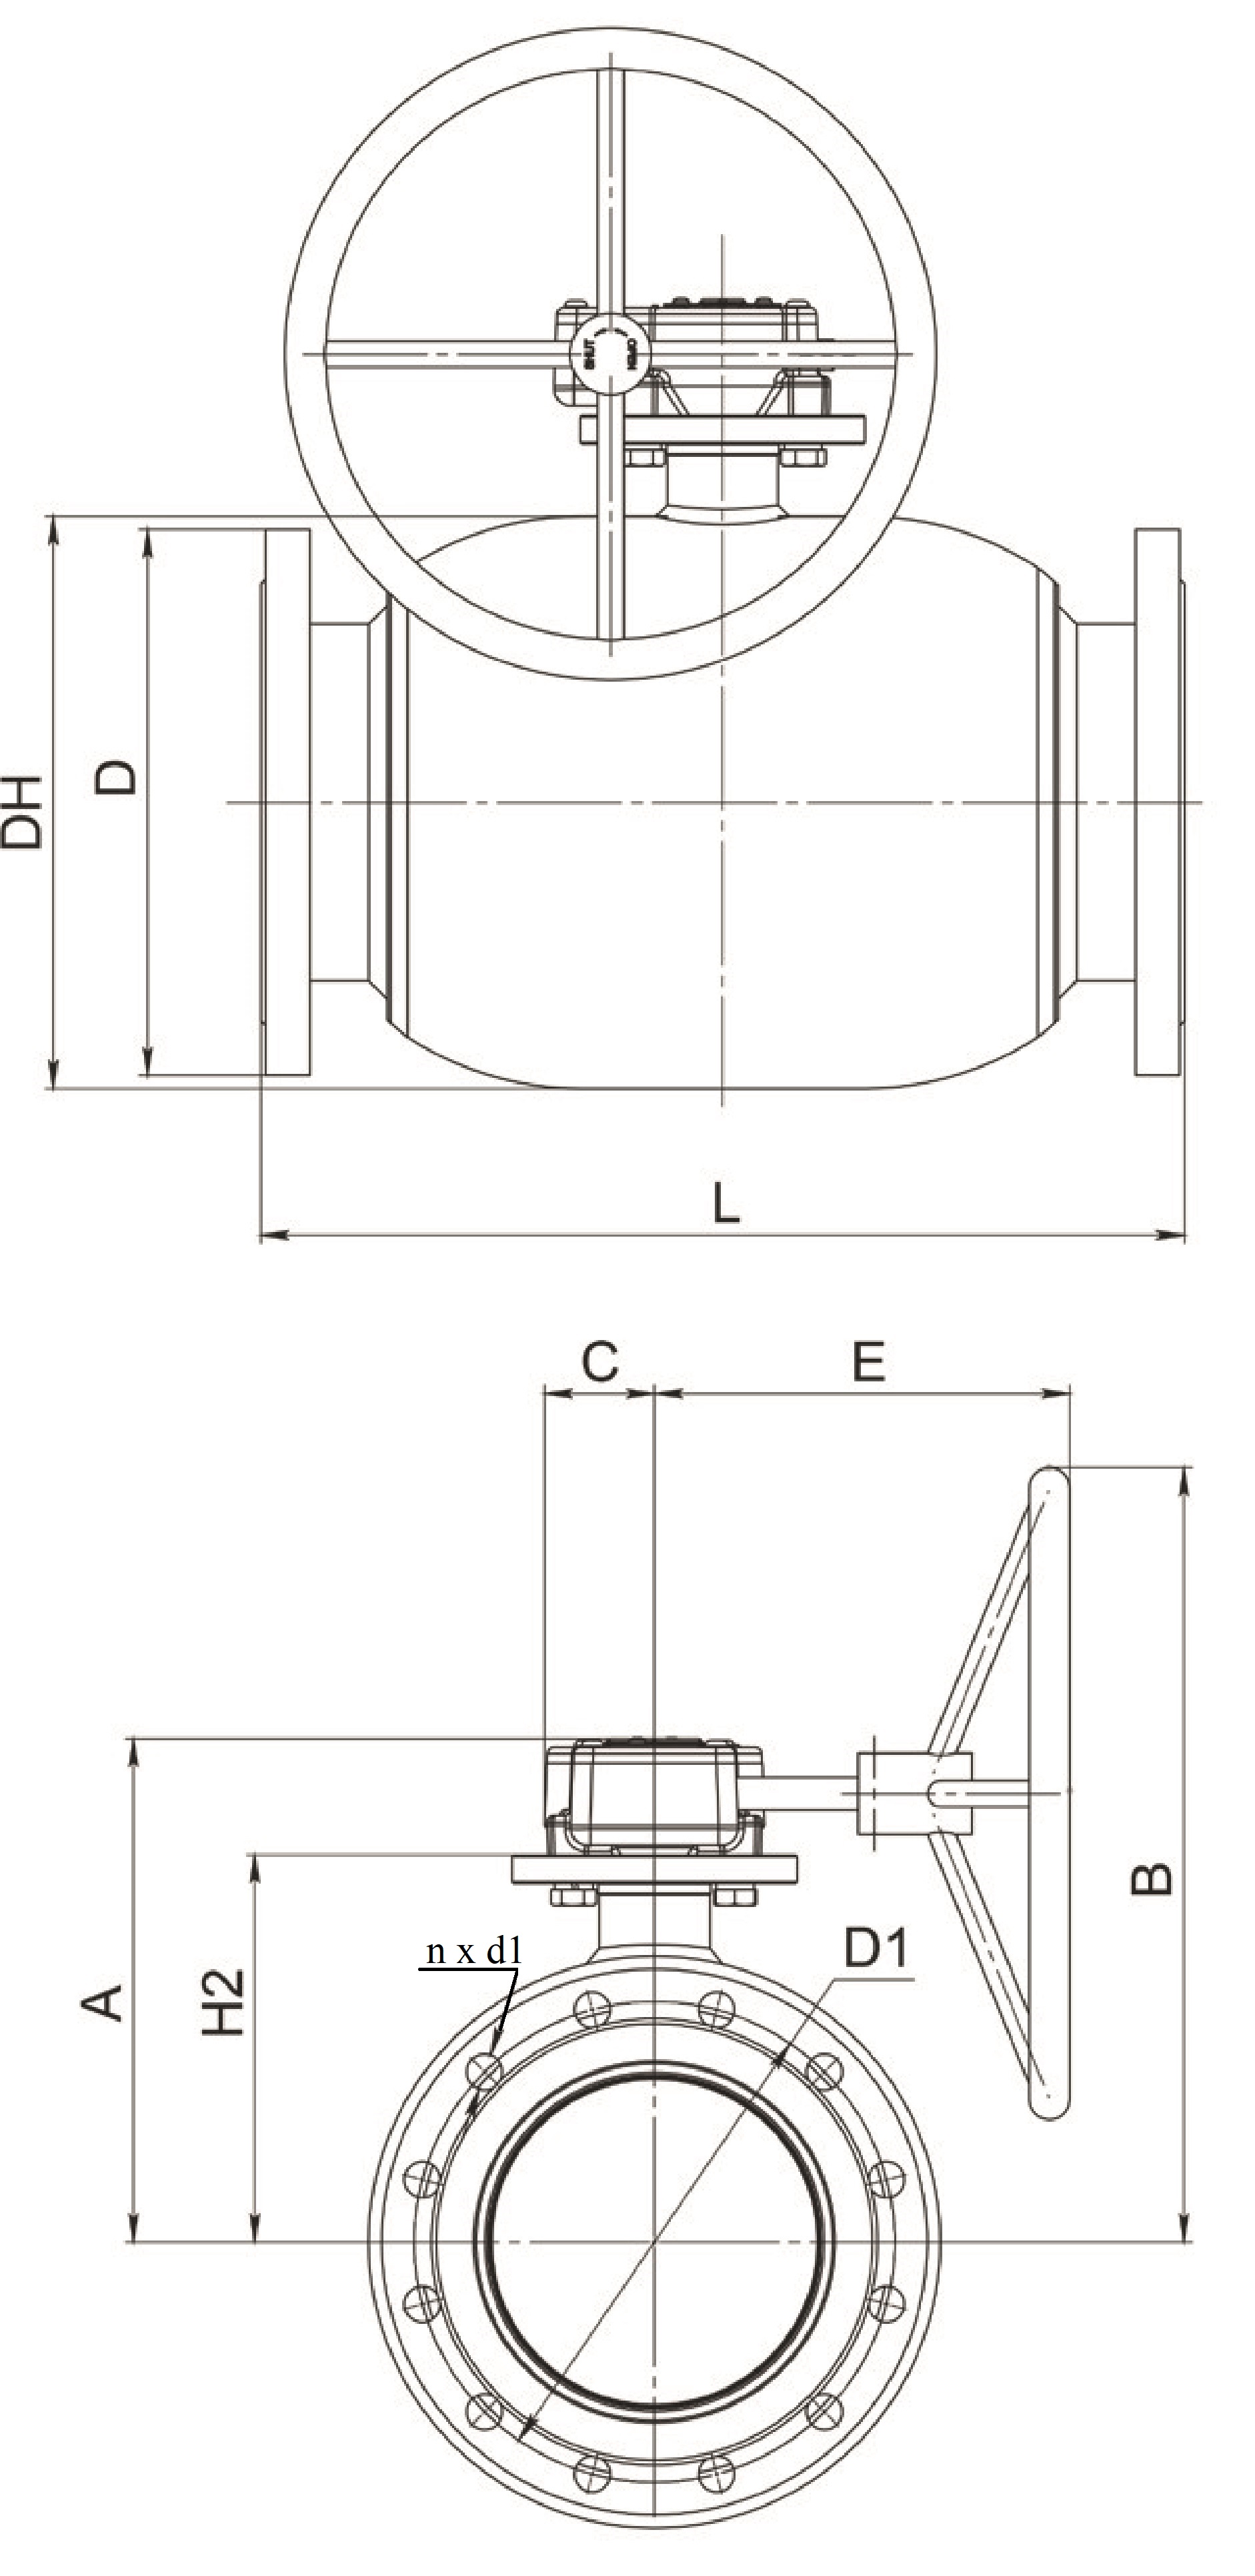 Краны шаровые Broen Ballomax-КШТ61.113.Р.25 Ду200-400 Ру25 полнопроходные с плавающим шаром, с ISO фланцем, корпус - сталь, уплотнение - EPDM, фланцевые, с редуктором